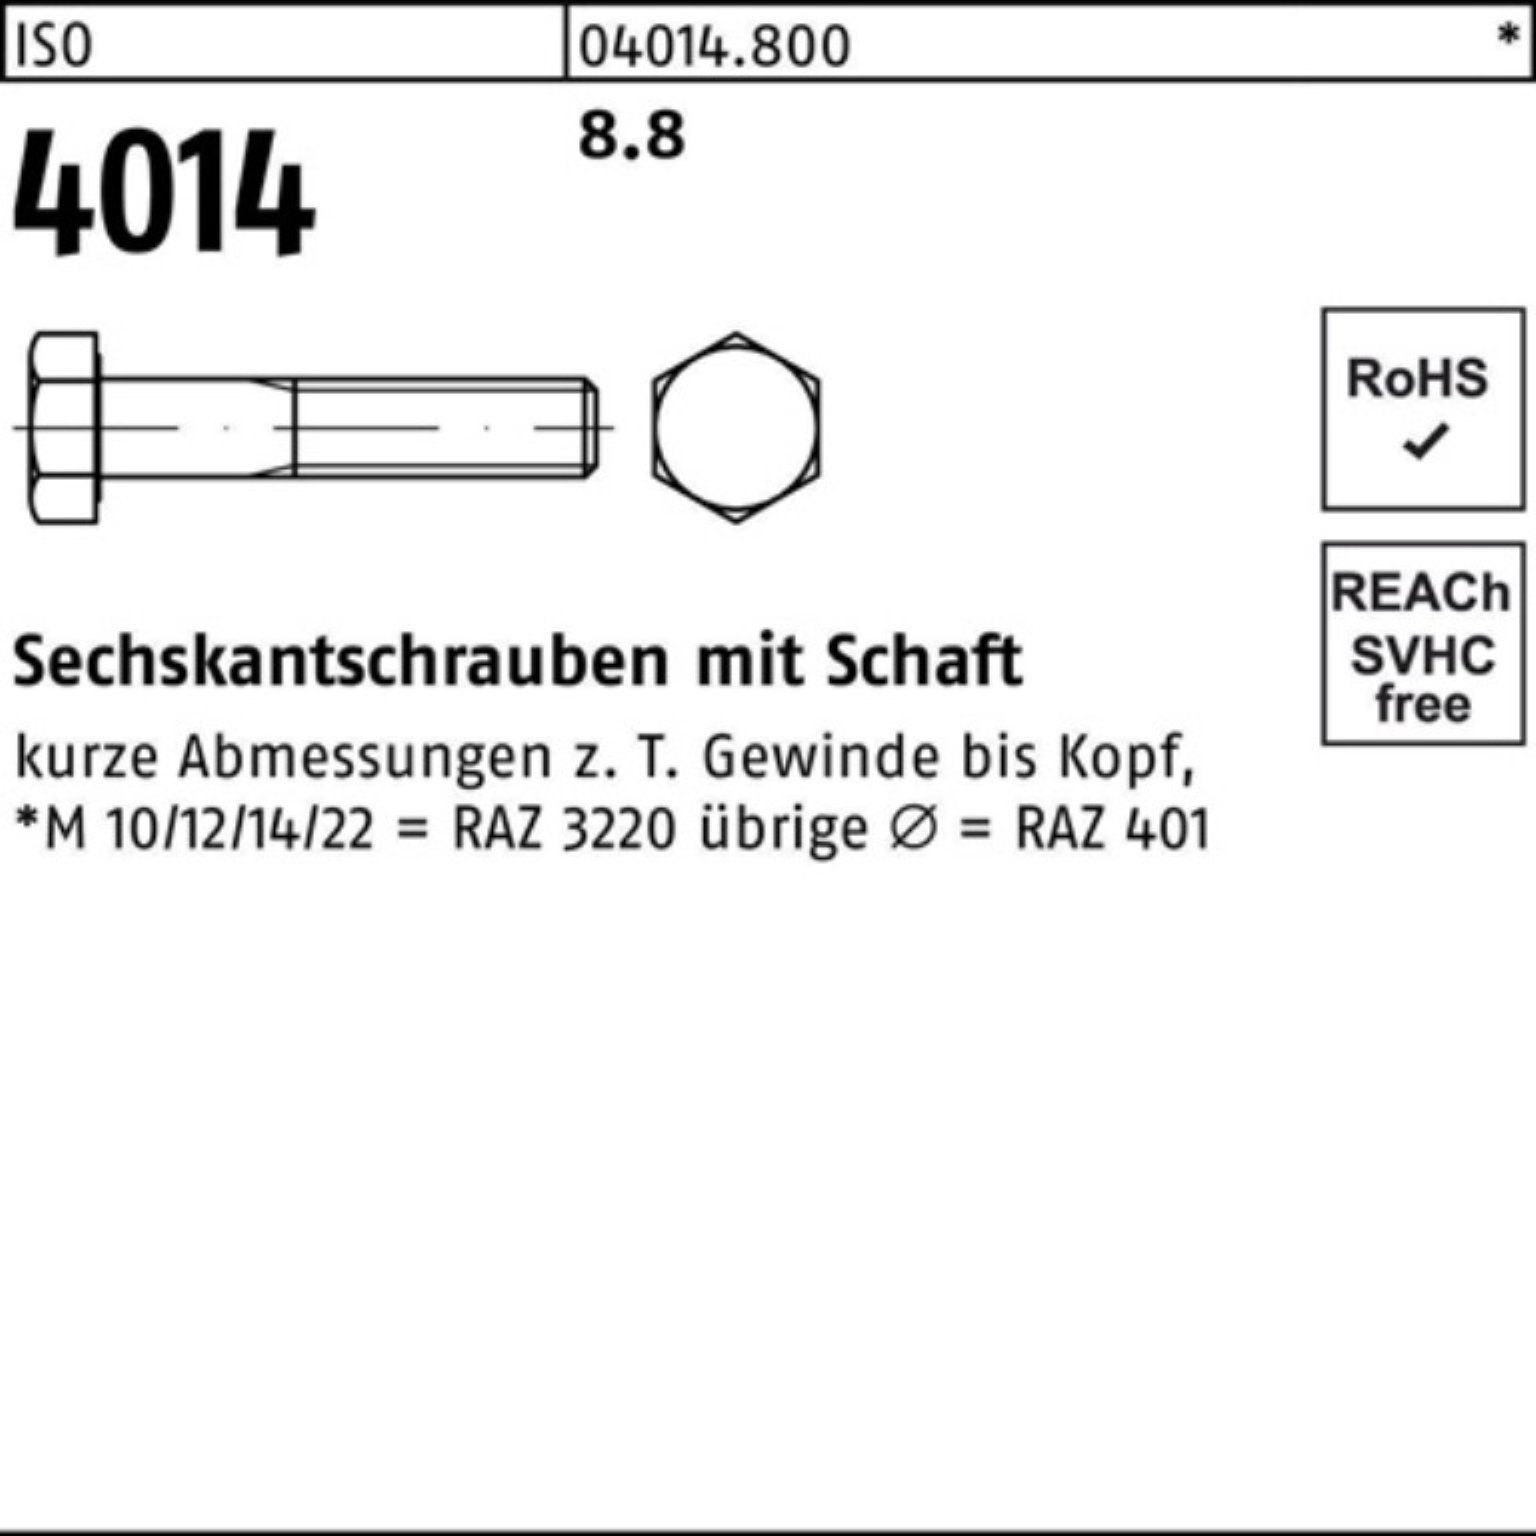 Stück 4014 ISO Bufab Sechskantschraube 50 Schaft 110 8.8 IS 100er Sechskantschraube M12x Pack